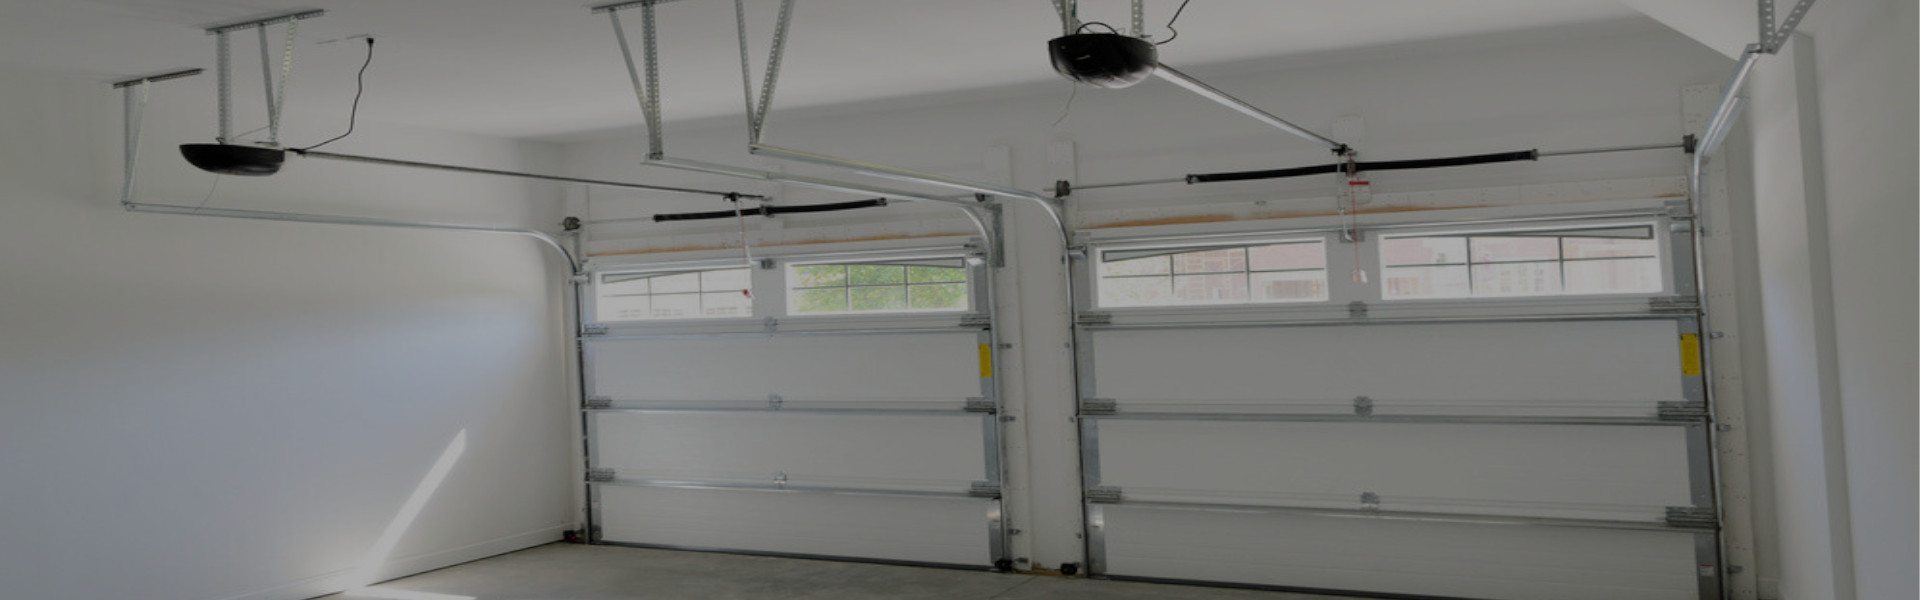 Slider Garage Door Repair, Glaziers in Bethnal Green, E2